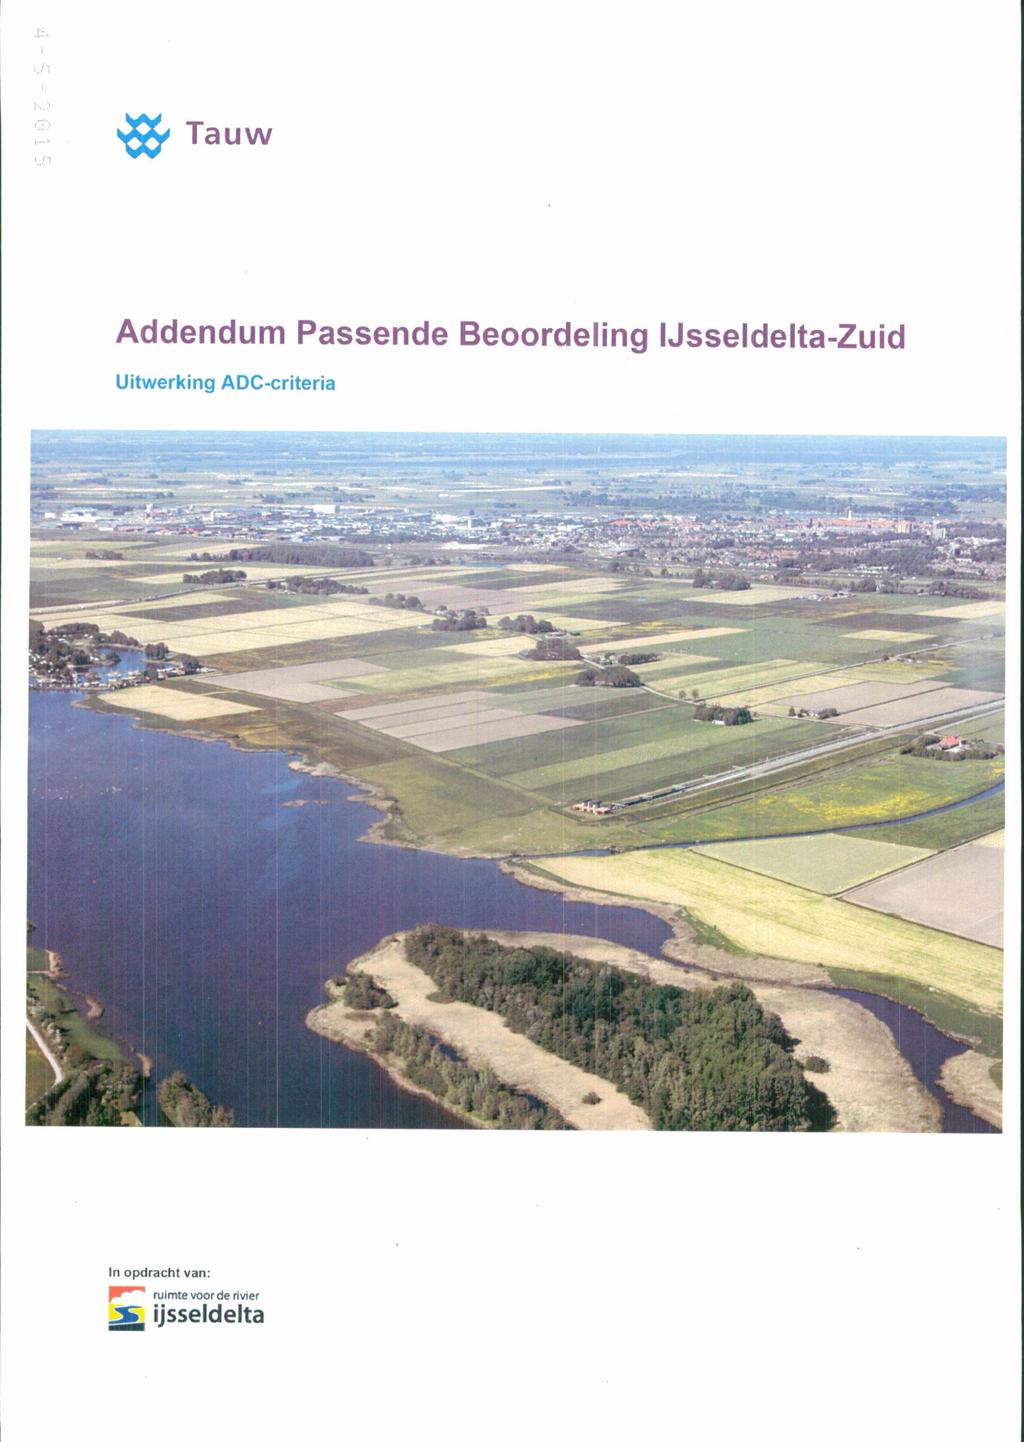 OOC Tauw Addendum Passende Beoordeling Jsseldelta-Zuid